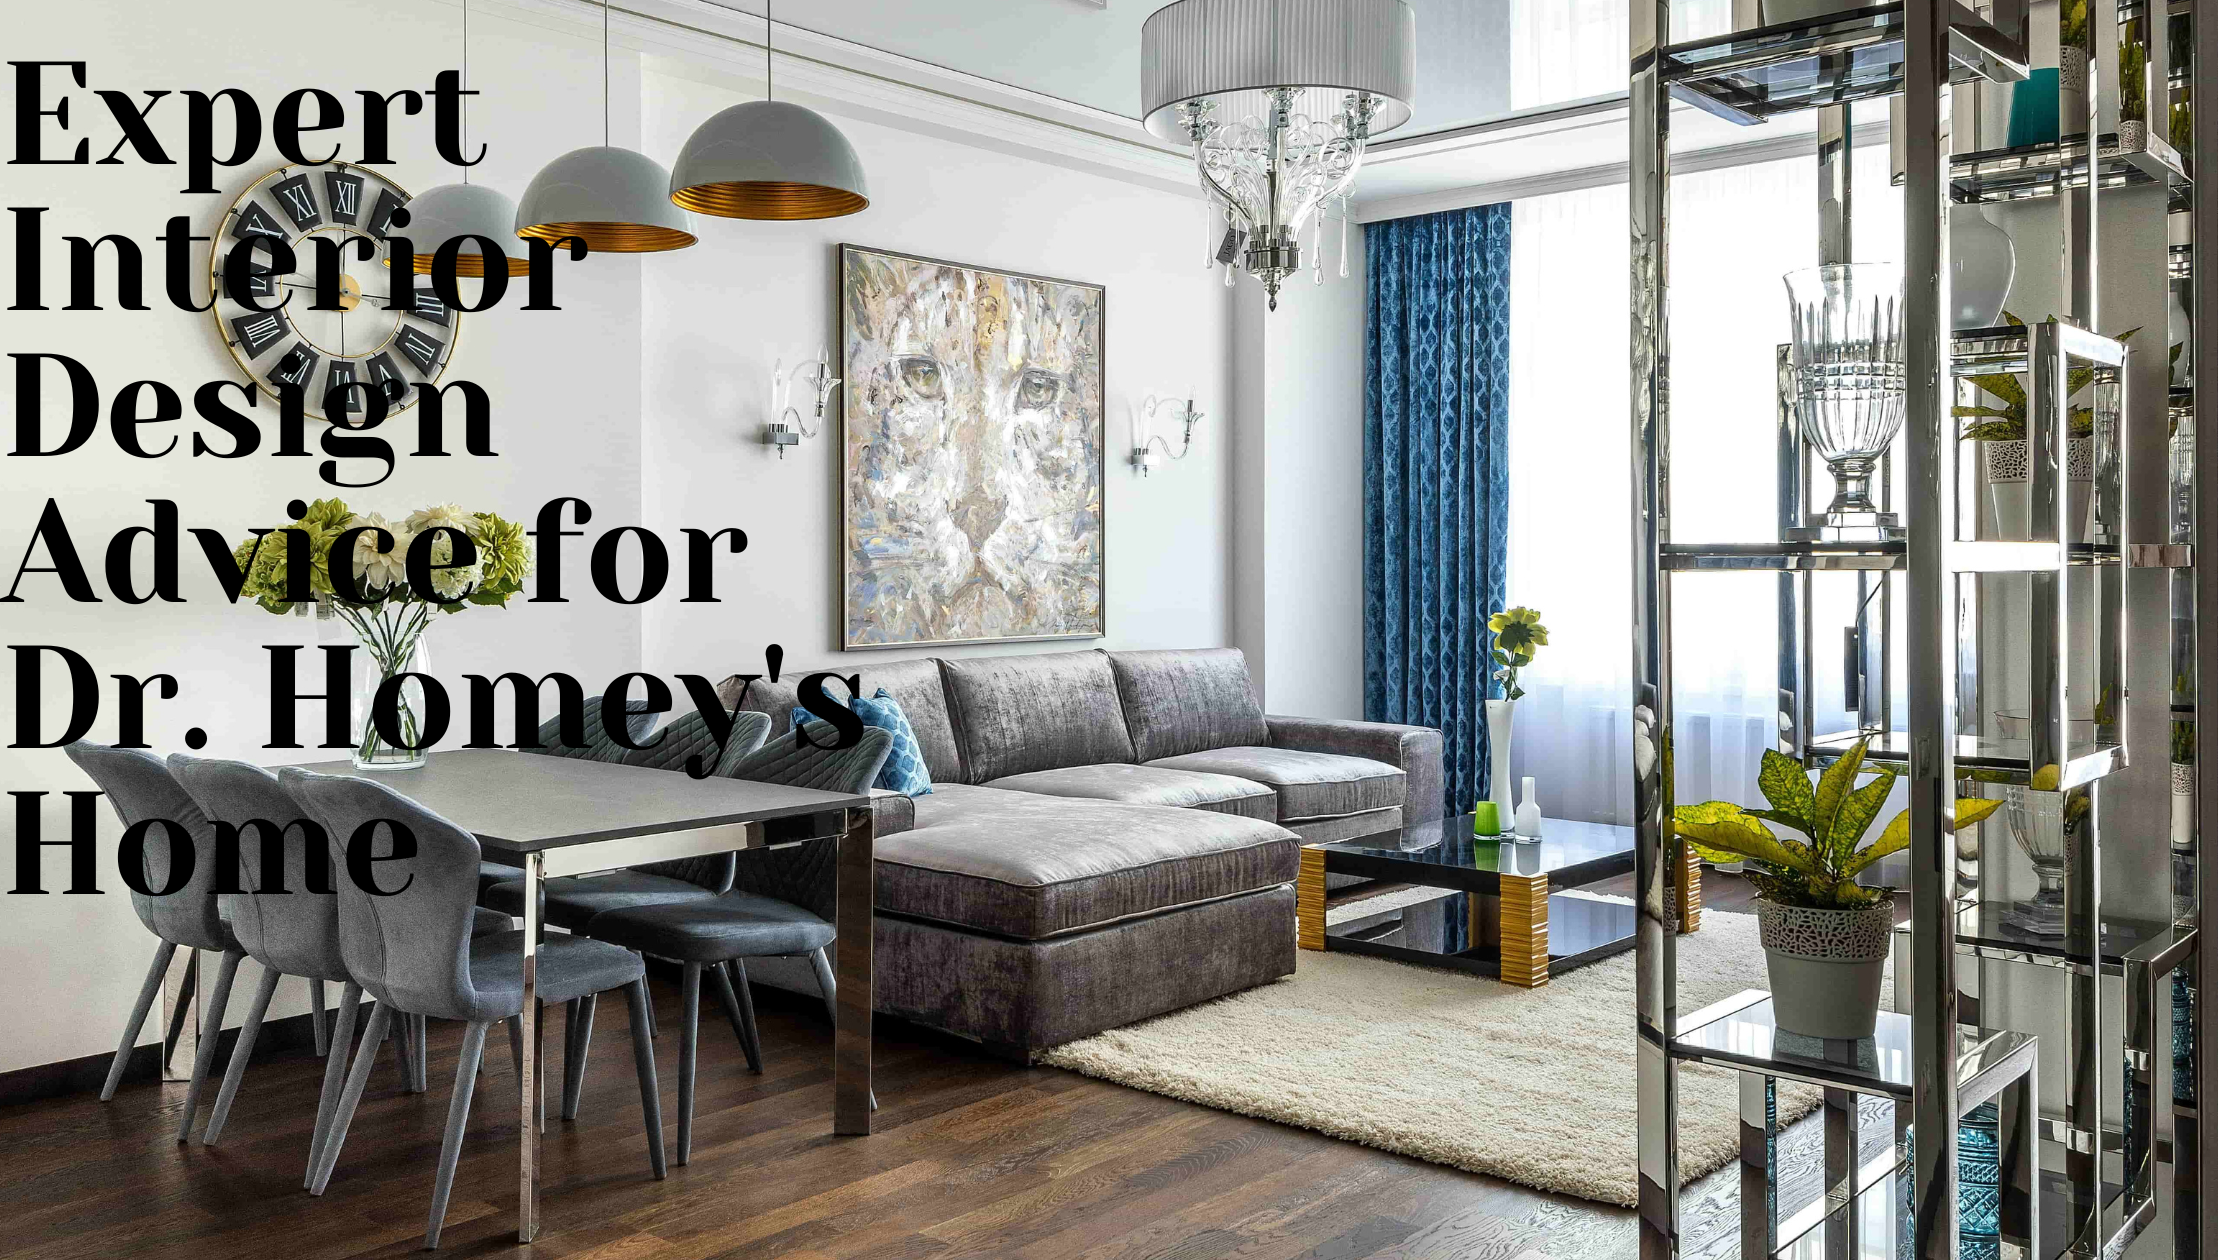 Expert Interior Design Advice for Dr. Homey's Home